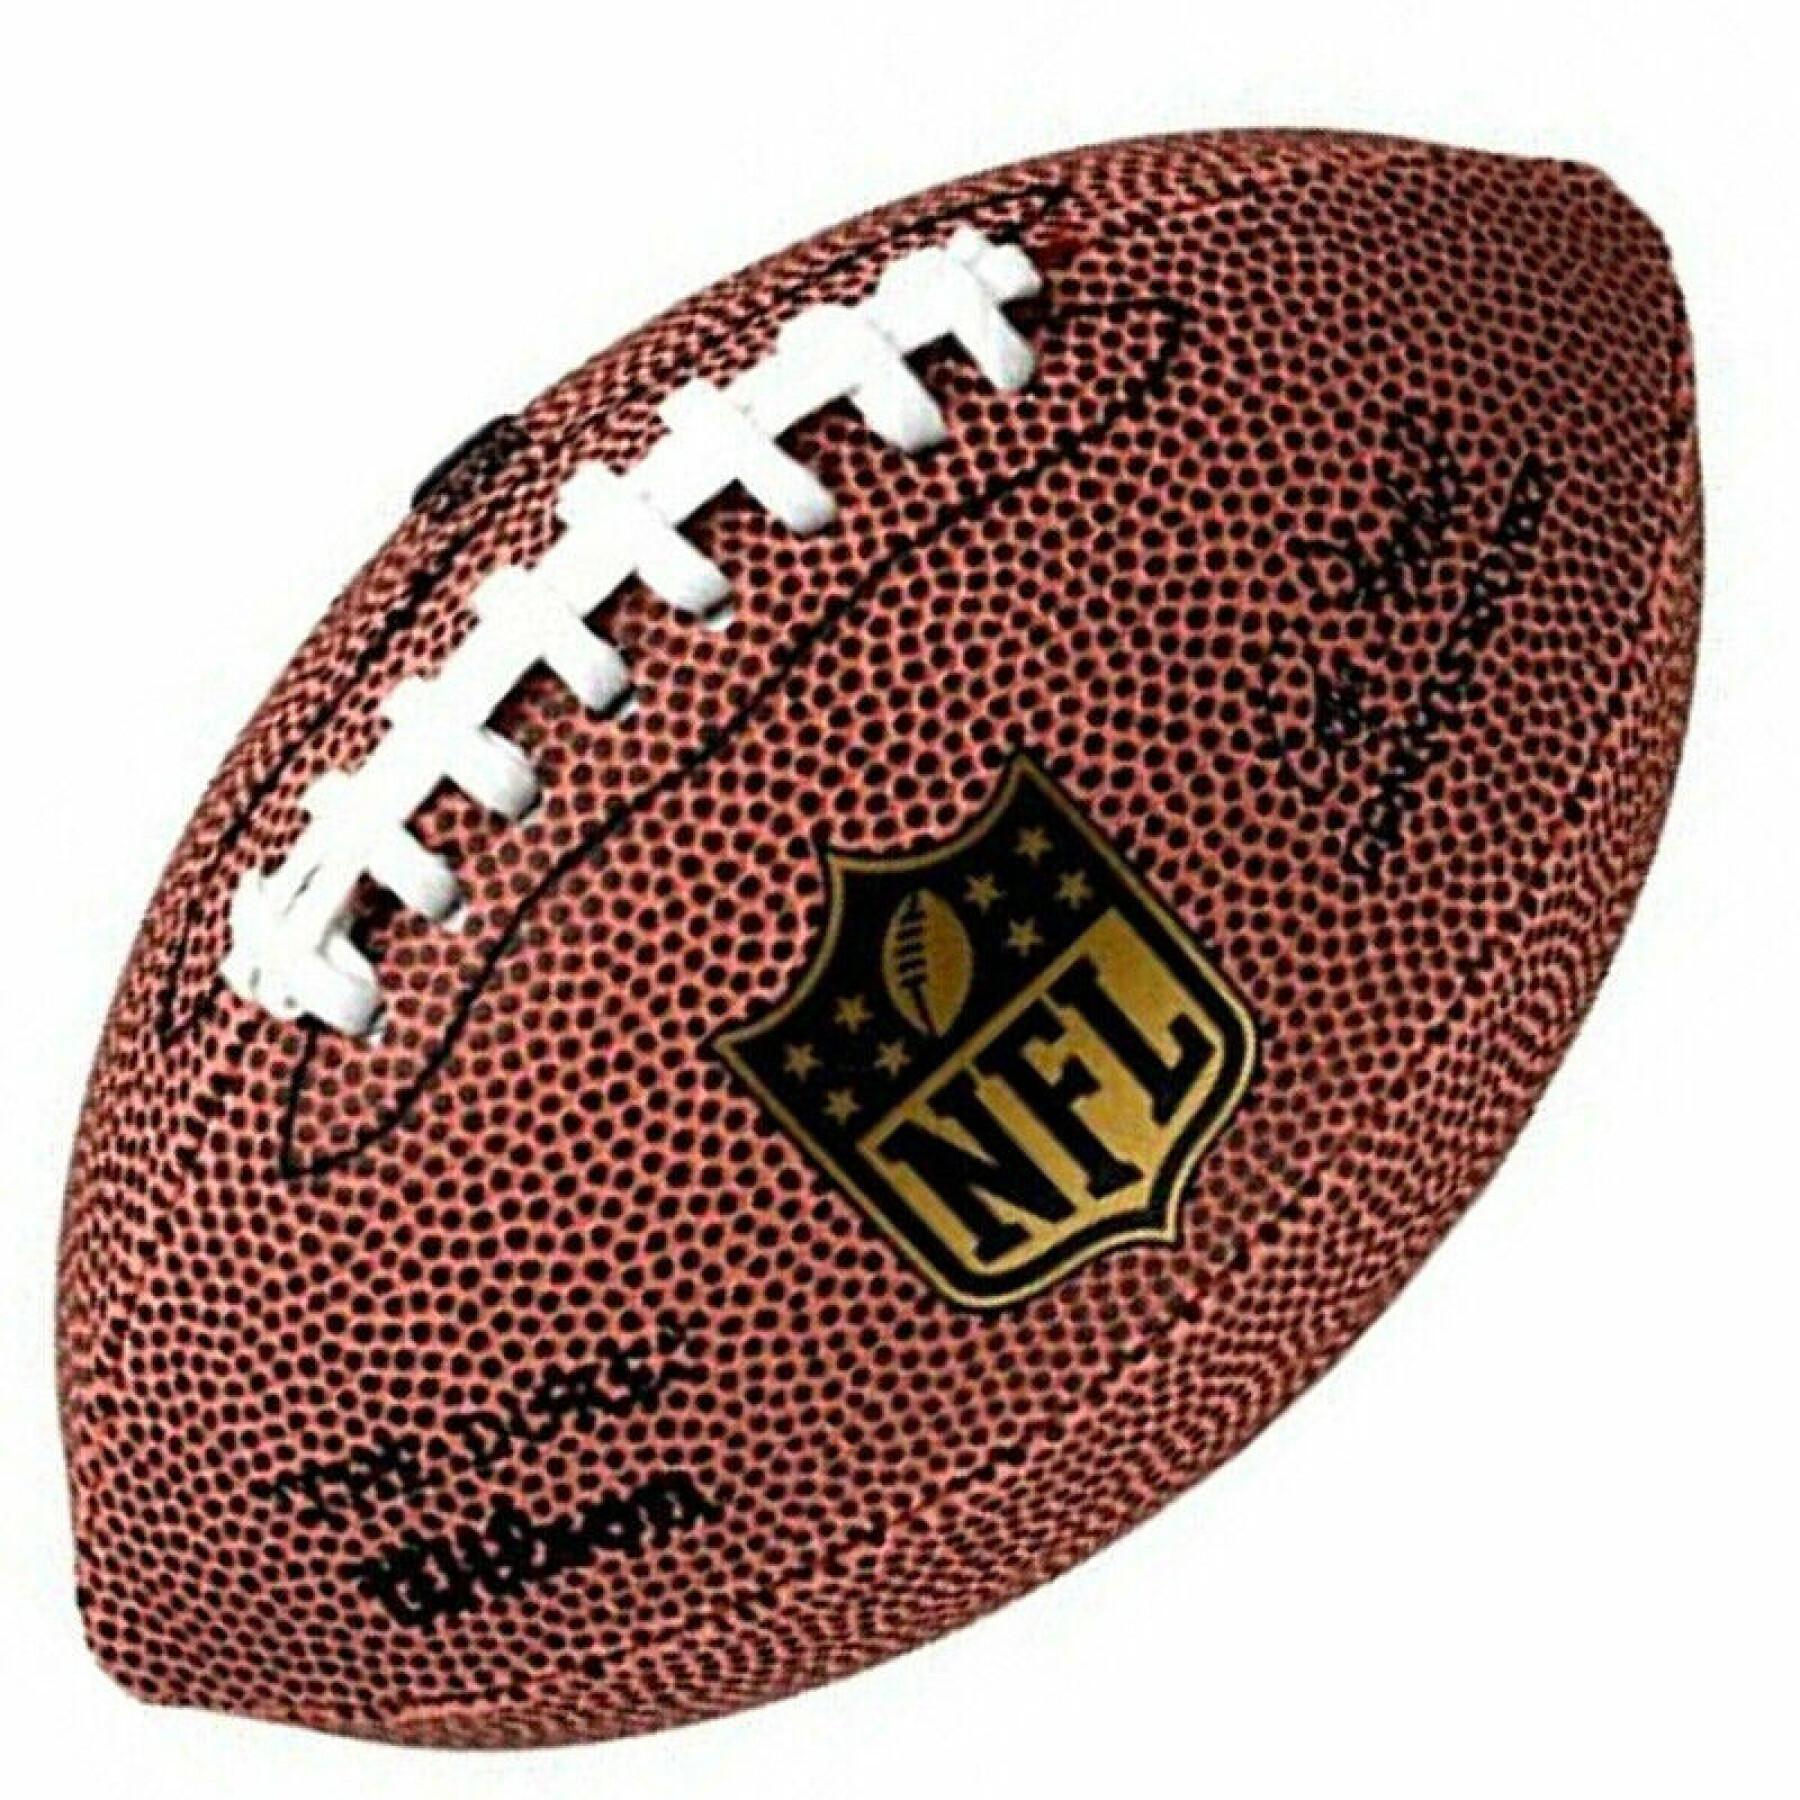 Ballon Wilson NFL Micro